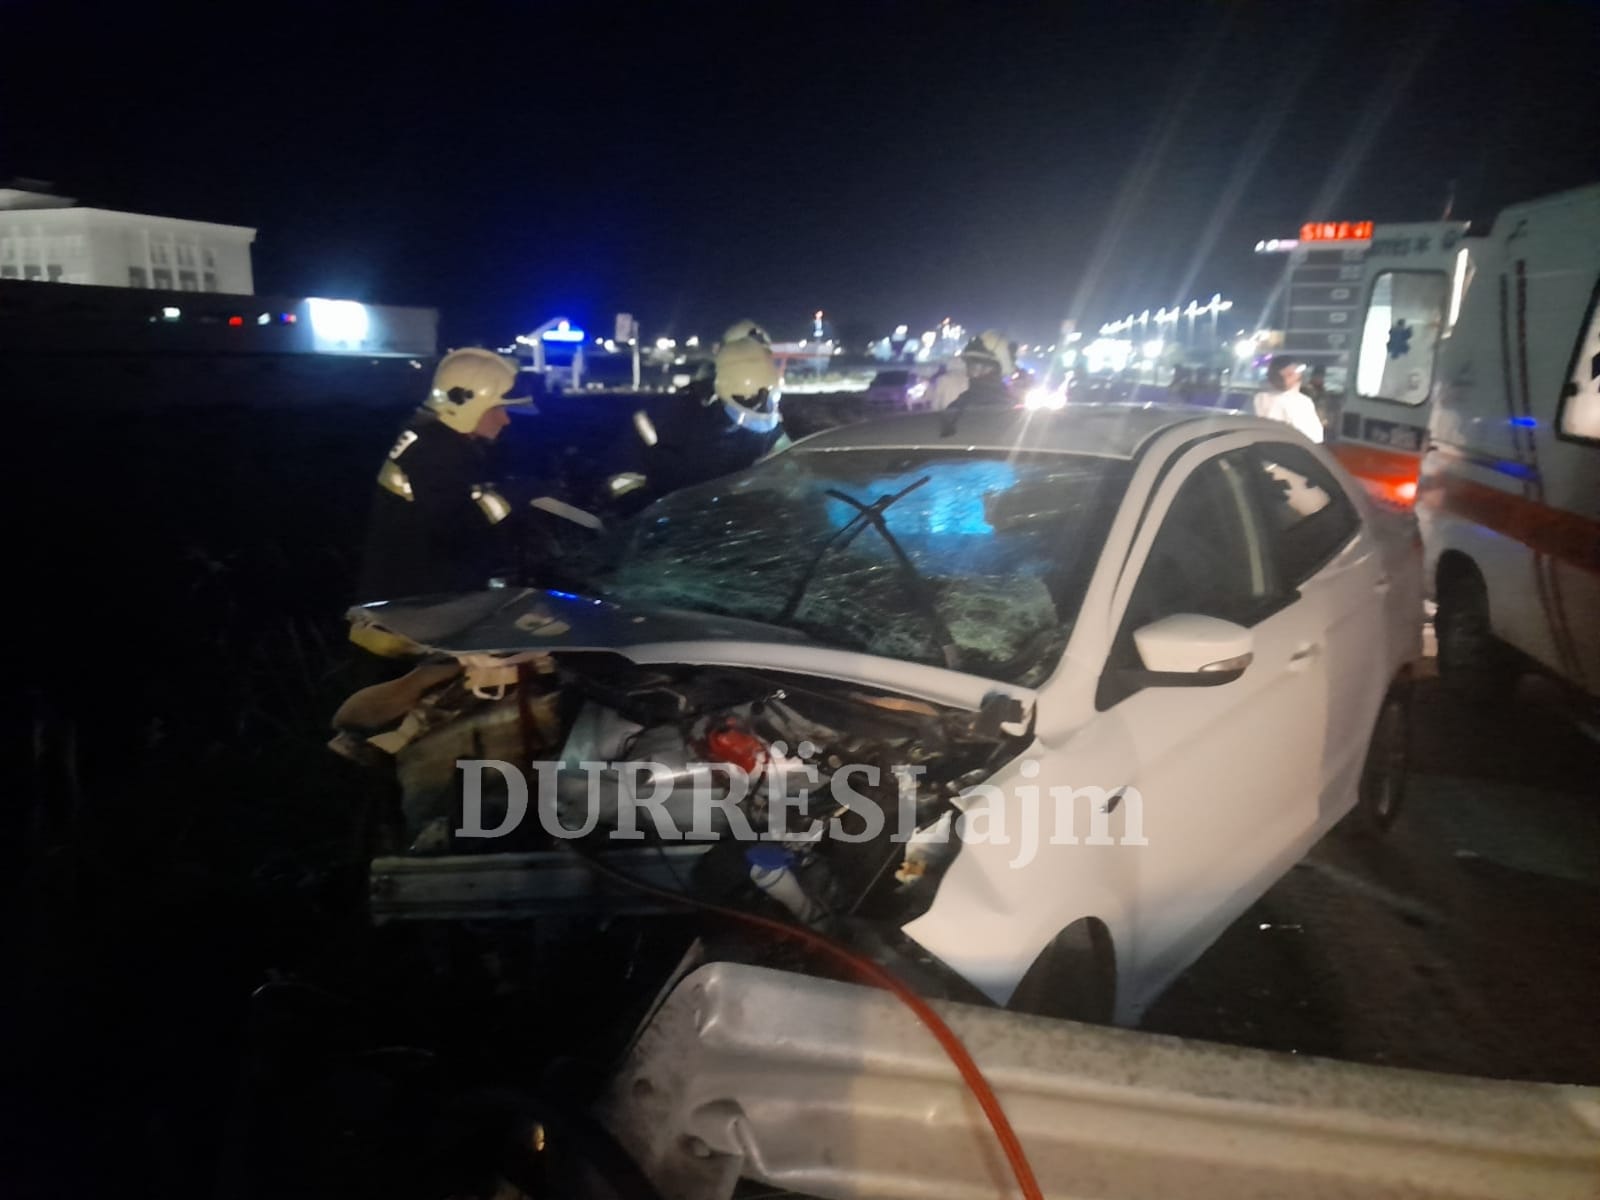 Durrës, aksidenti tragjik në autostradë me 2 të vdekur e një të plagosur, barrierat metalike kanë depërtuar brenda në mjet (FOTO)